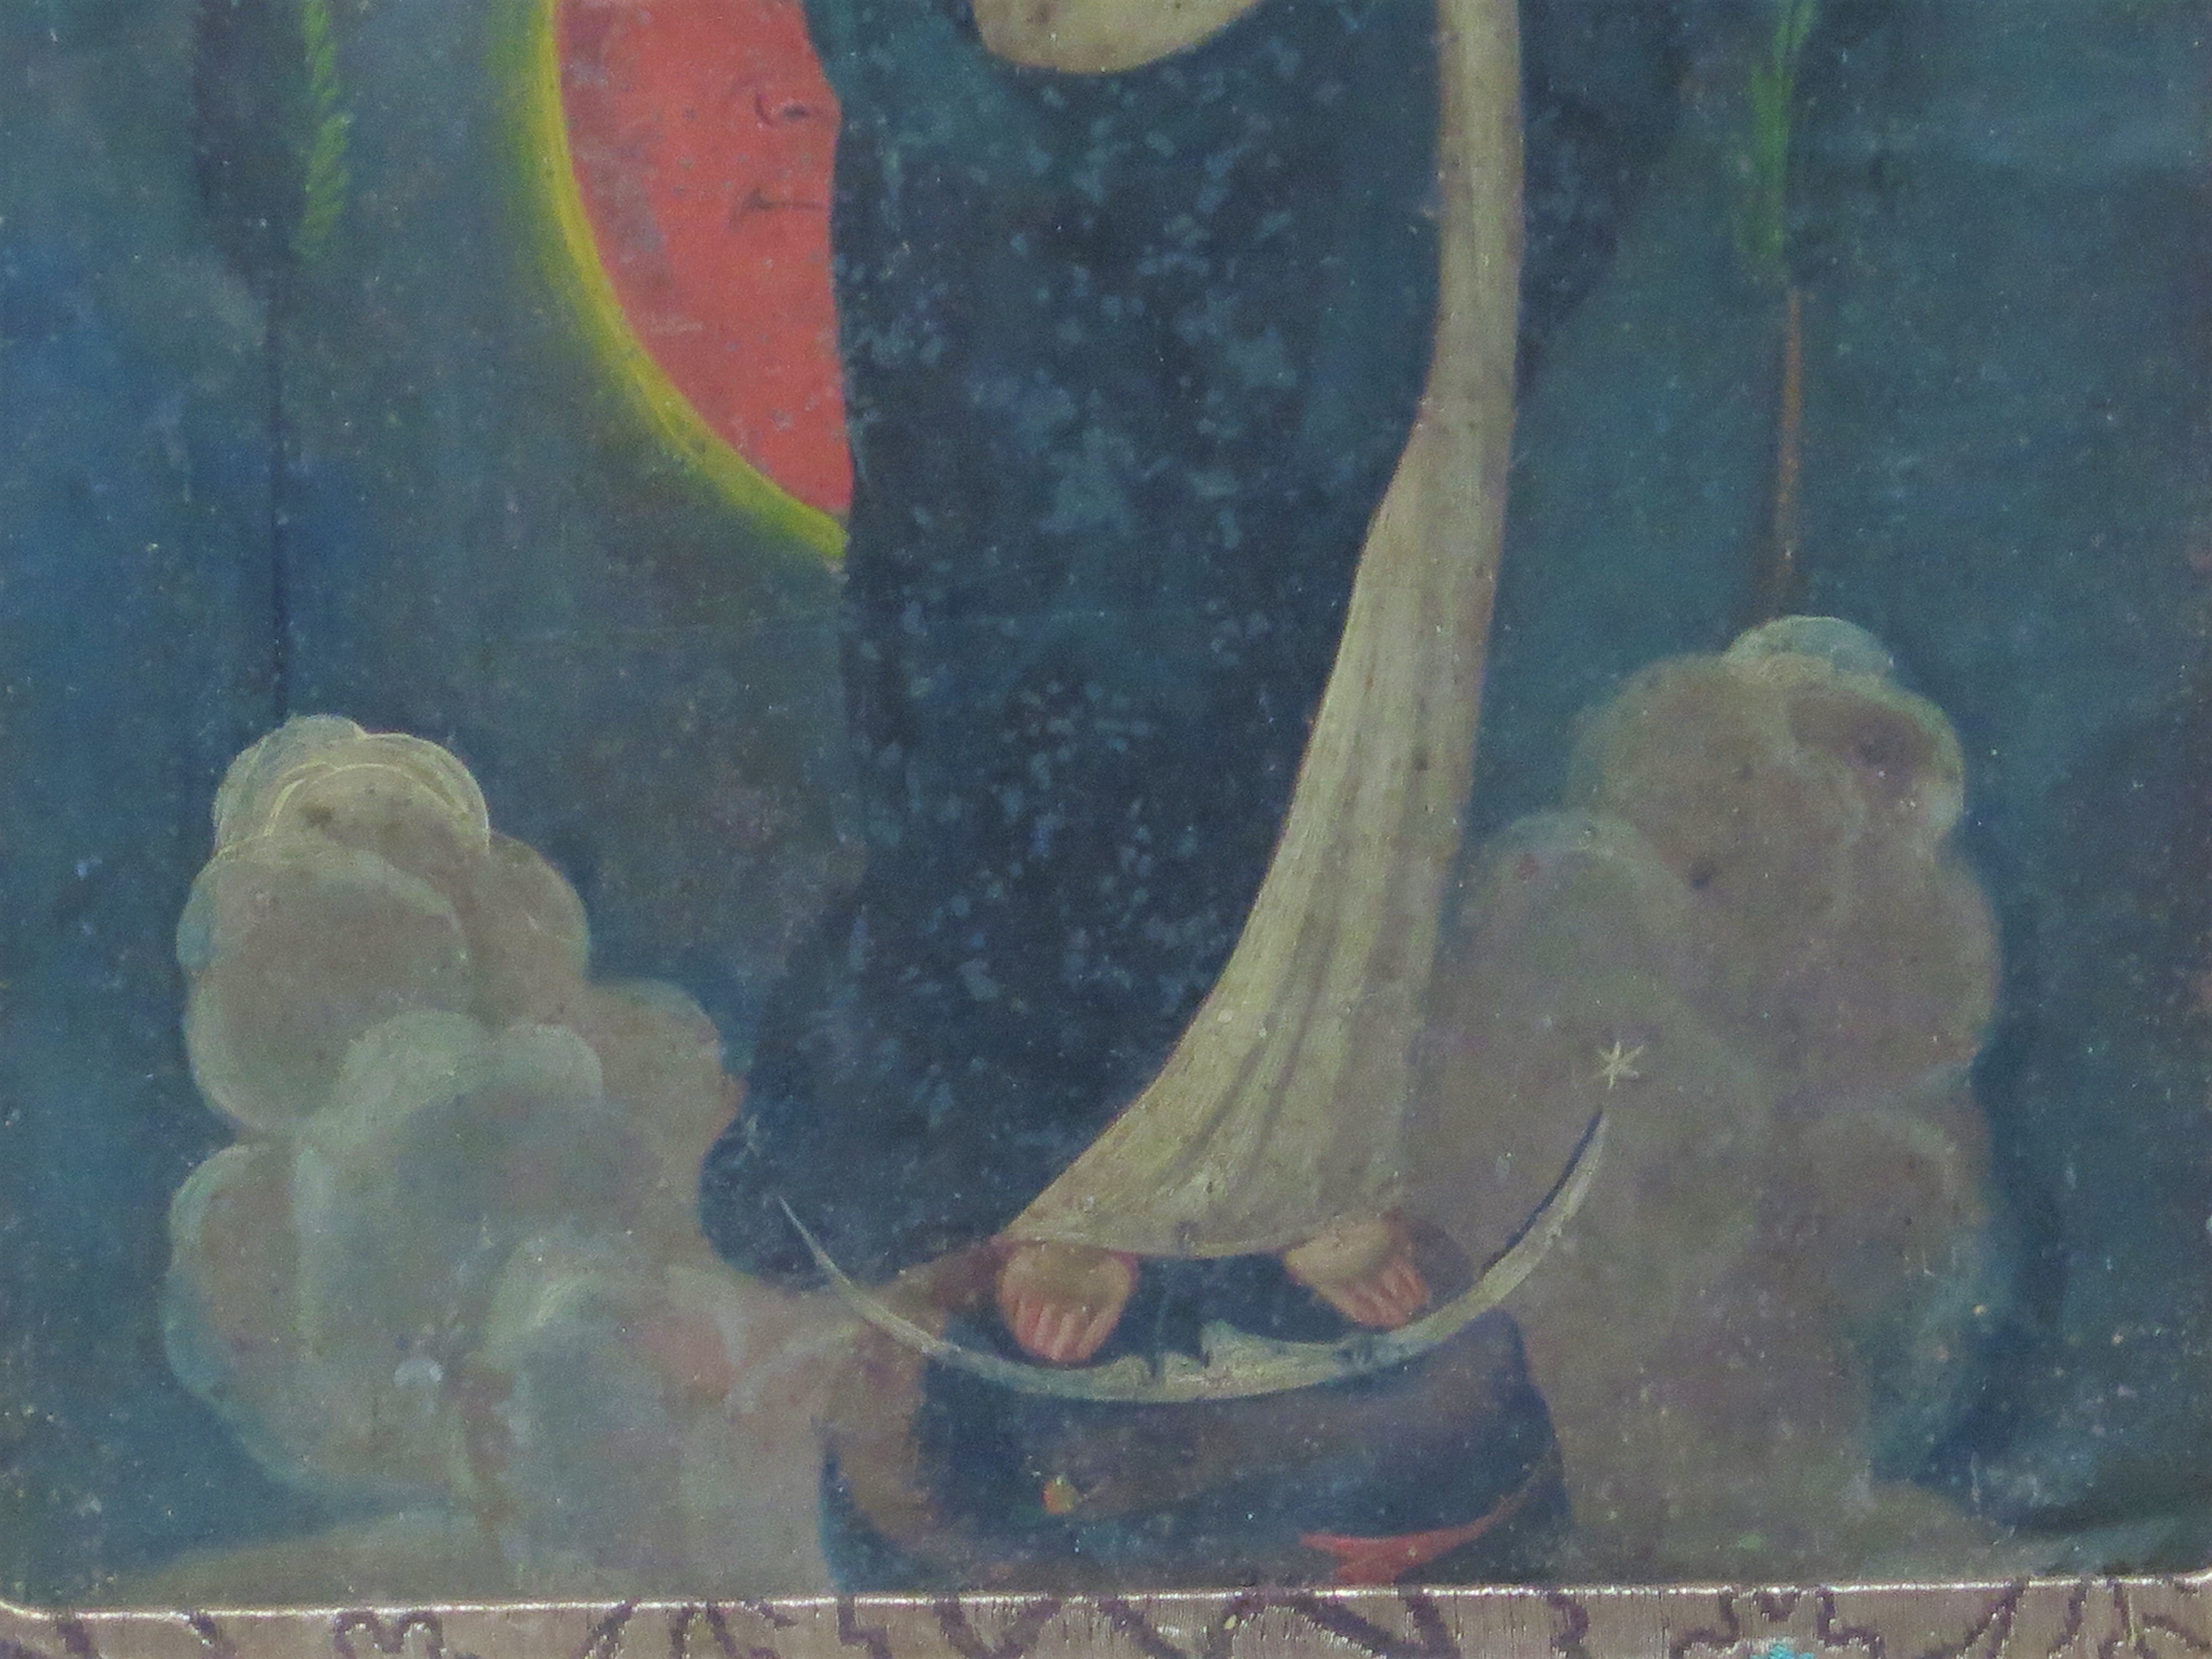 Mexican Retablo, Depicting La Purisima Concepcion (The Immaculate Conception), Circa 19th Century Oil on Tin